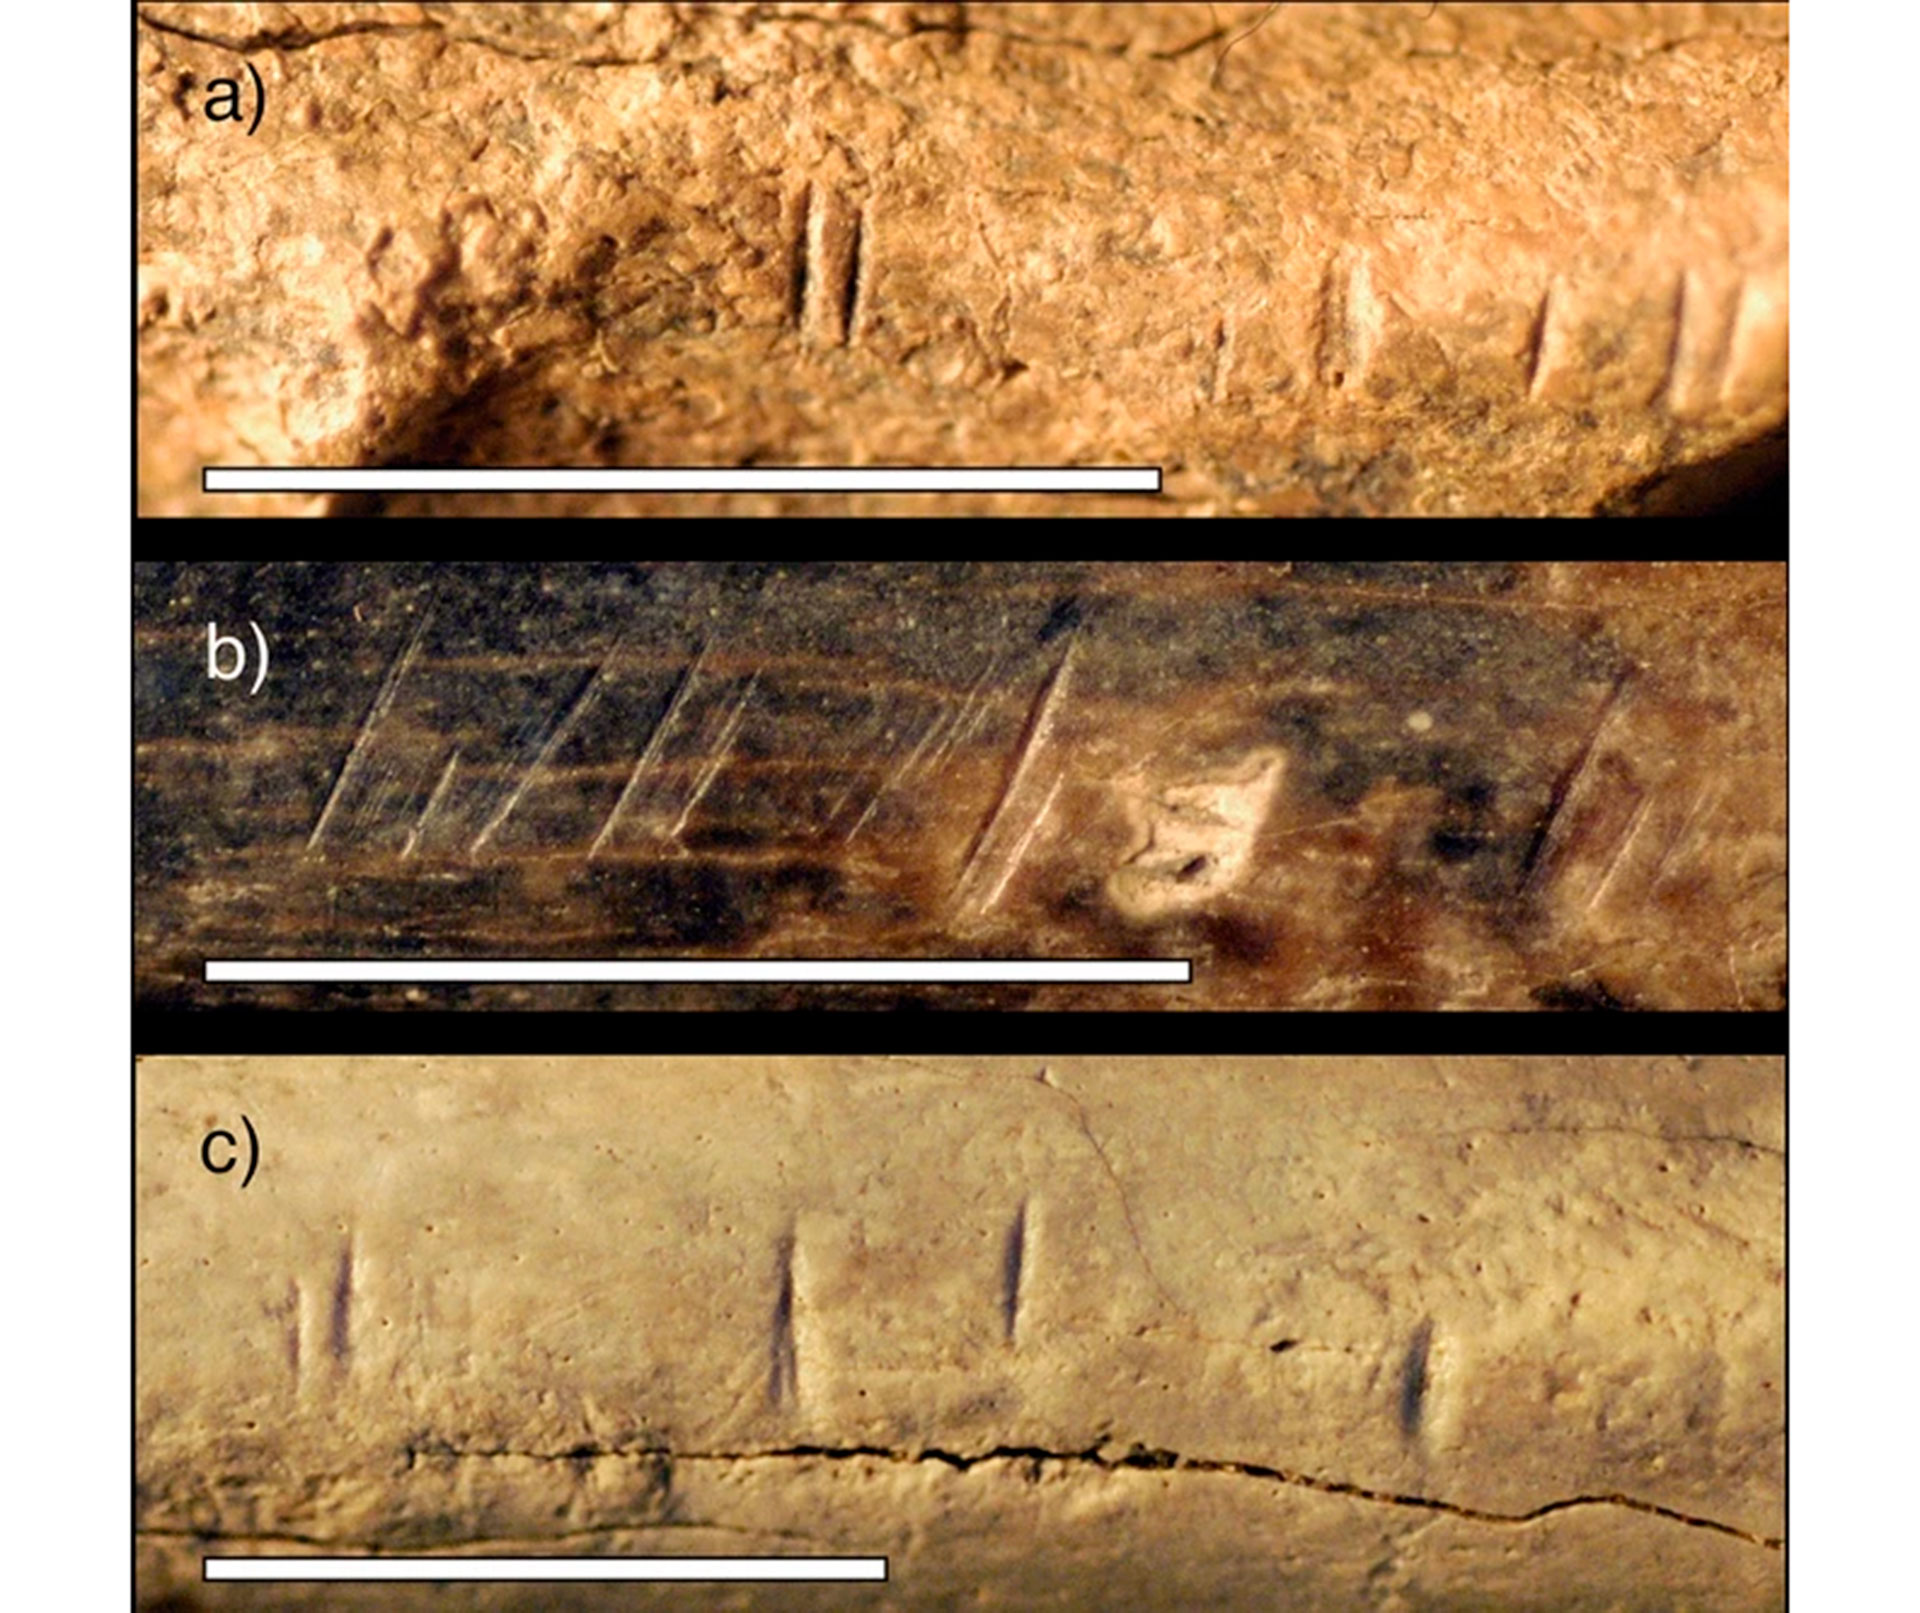 Fotografías de primer plano de tres especímenes de fauna fósil de hallazgos arqueológicos de superficie y excavaciones que muestran marcas de corte similares a las encontradas en el hominido.